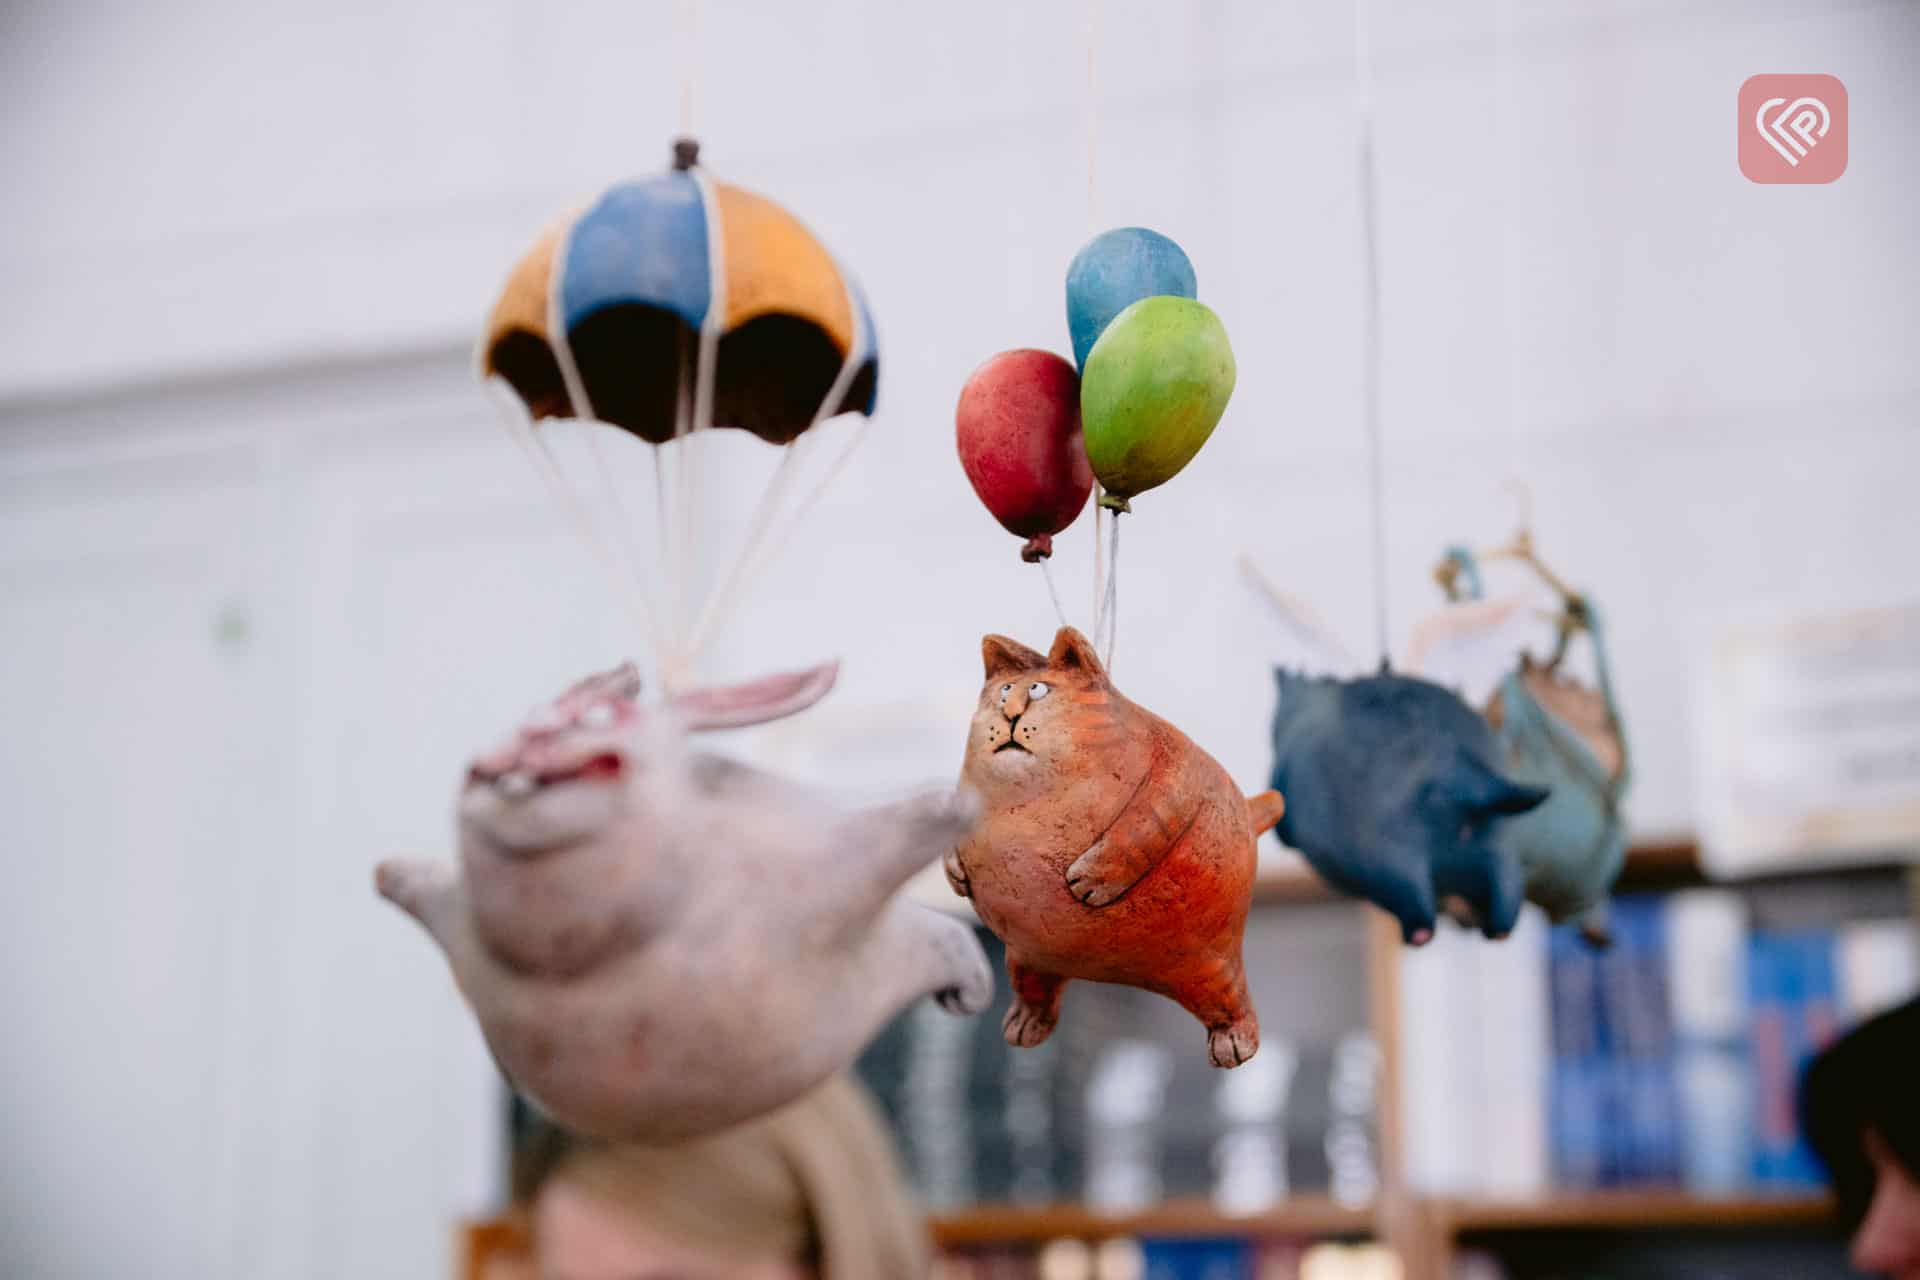 У Переяславі відкрили виставку авторських ляльок-котиків – героїв казкових історій